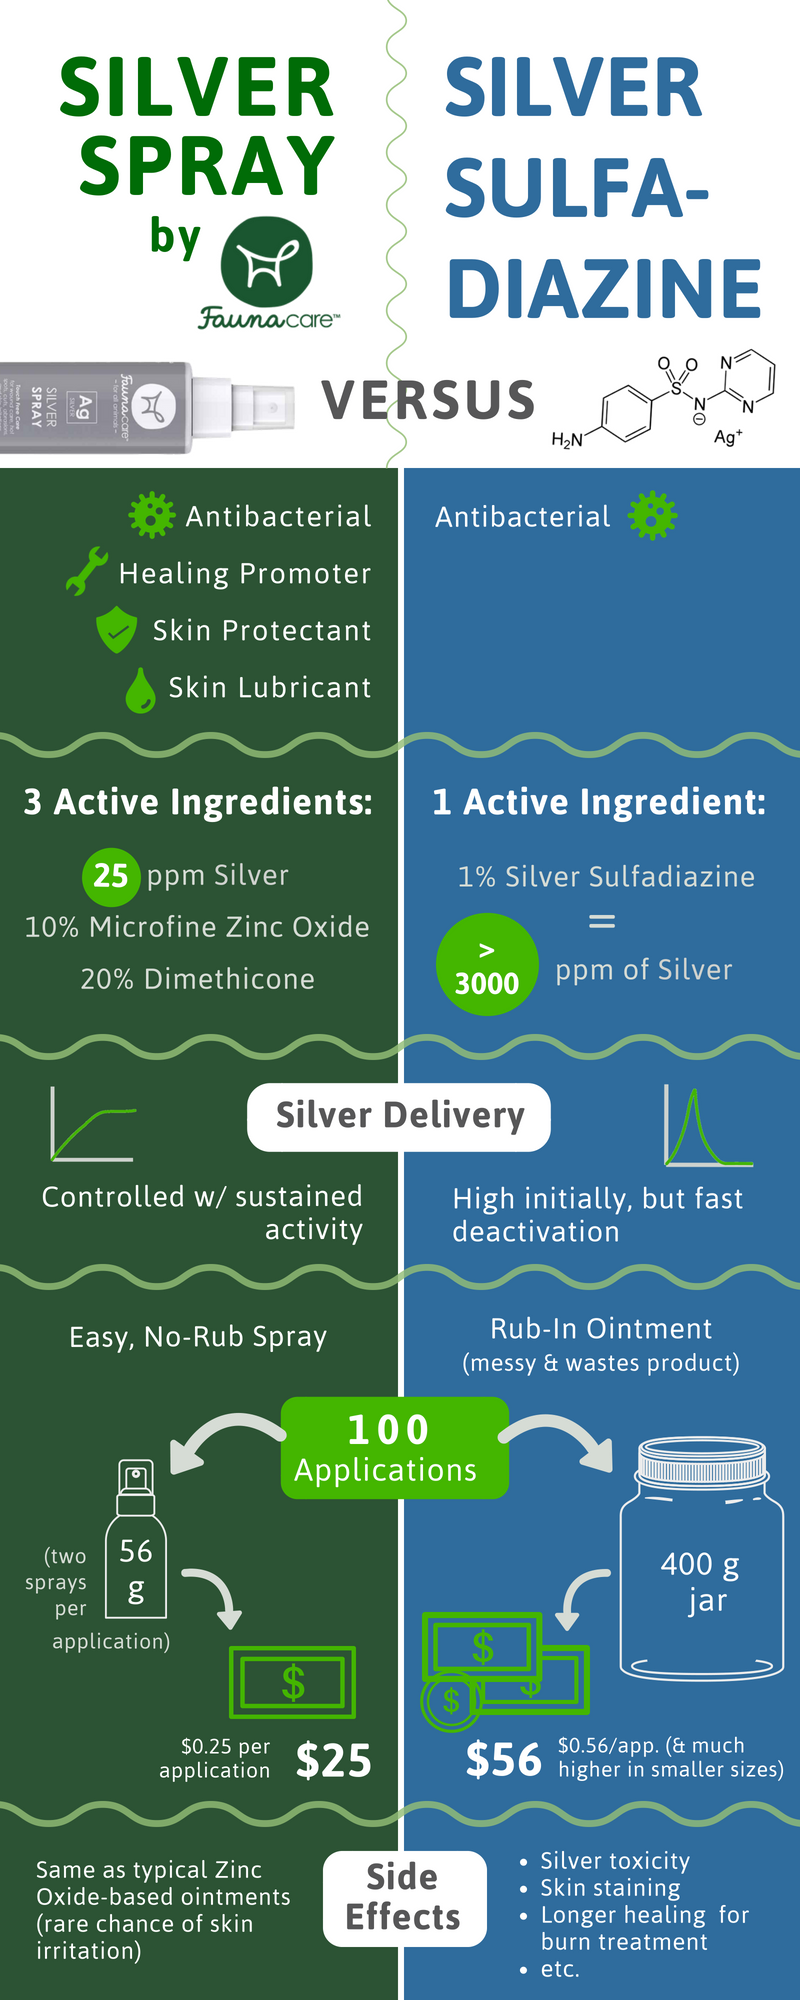 Proč byste měli místo stříbrného sulfadiazinu používat stříbrný sprej